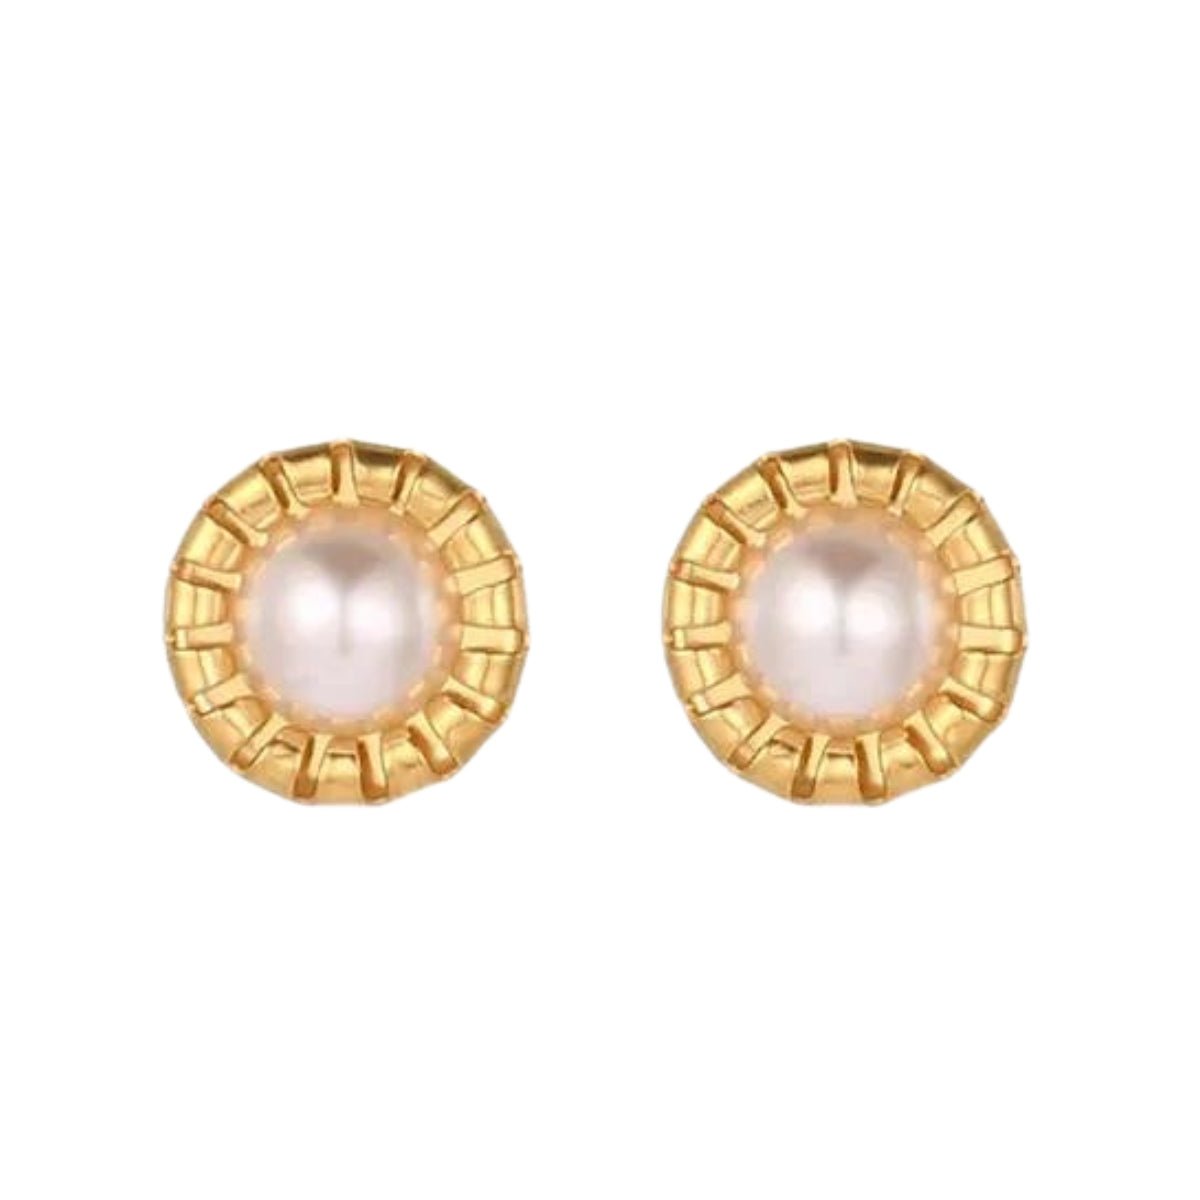 Ατσάλινα σκουλαρίκια καρφωτά με πέρλα χρυσά (E1158) - earrings - charmy.gr